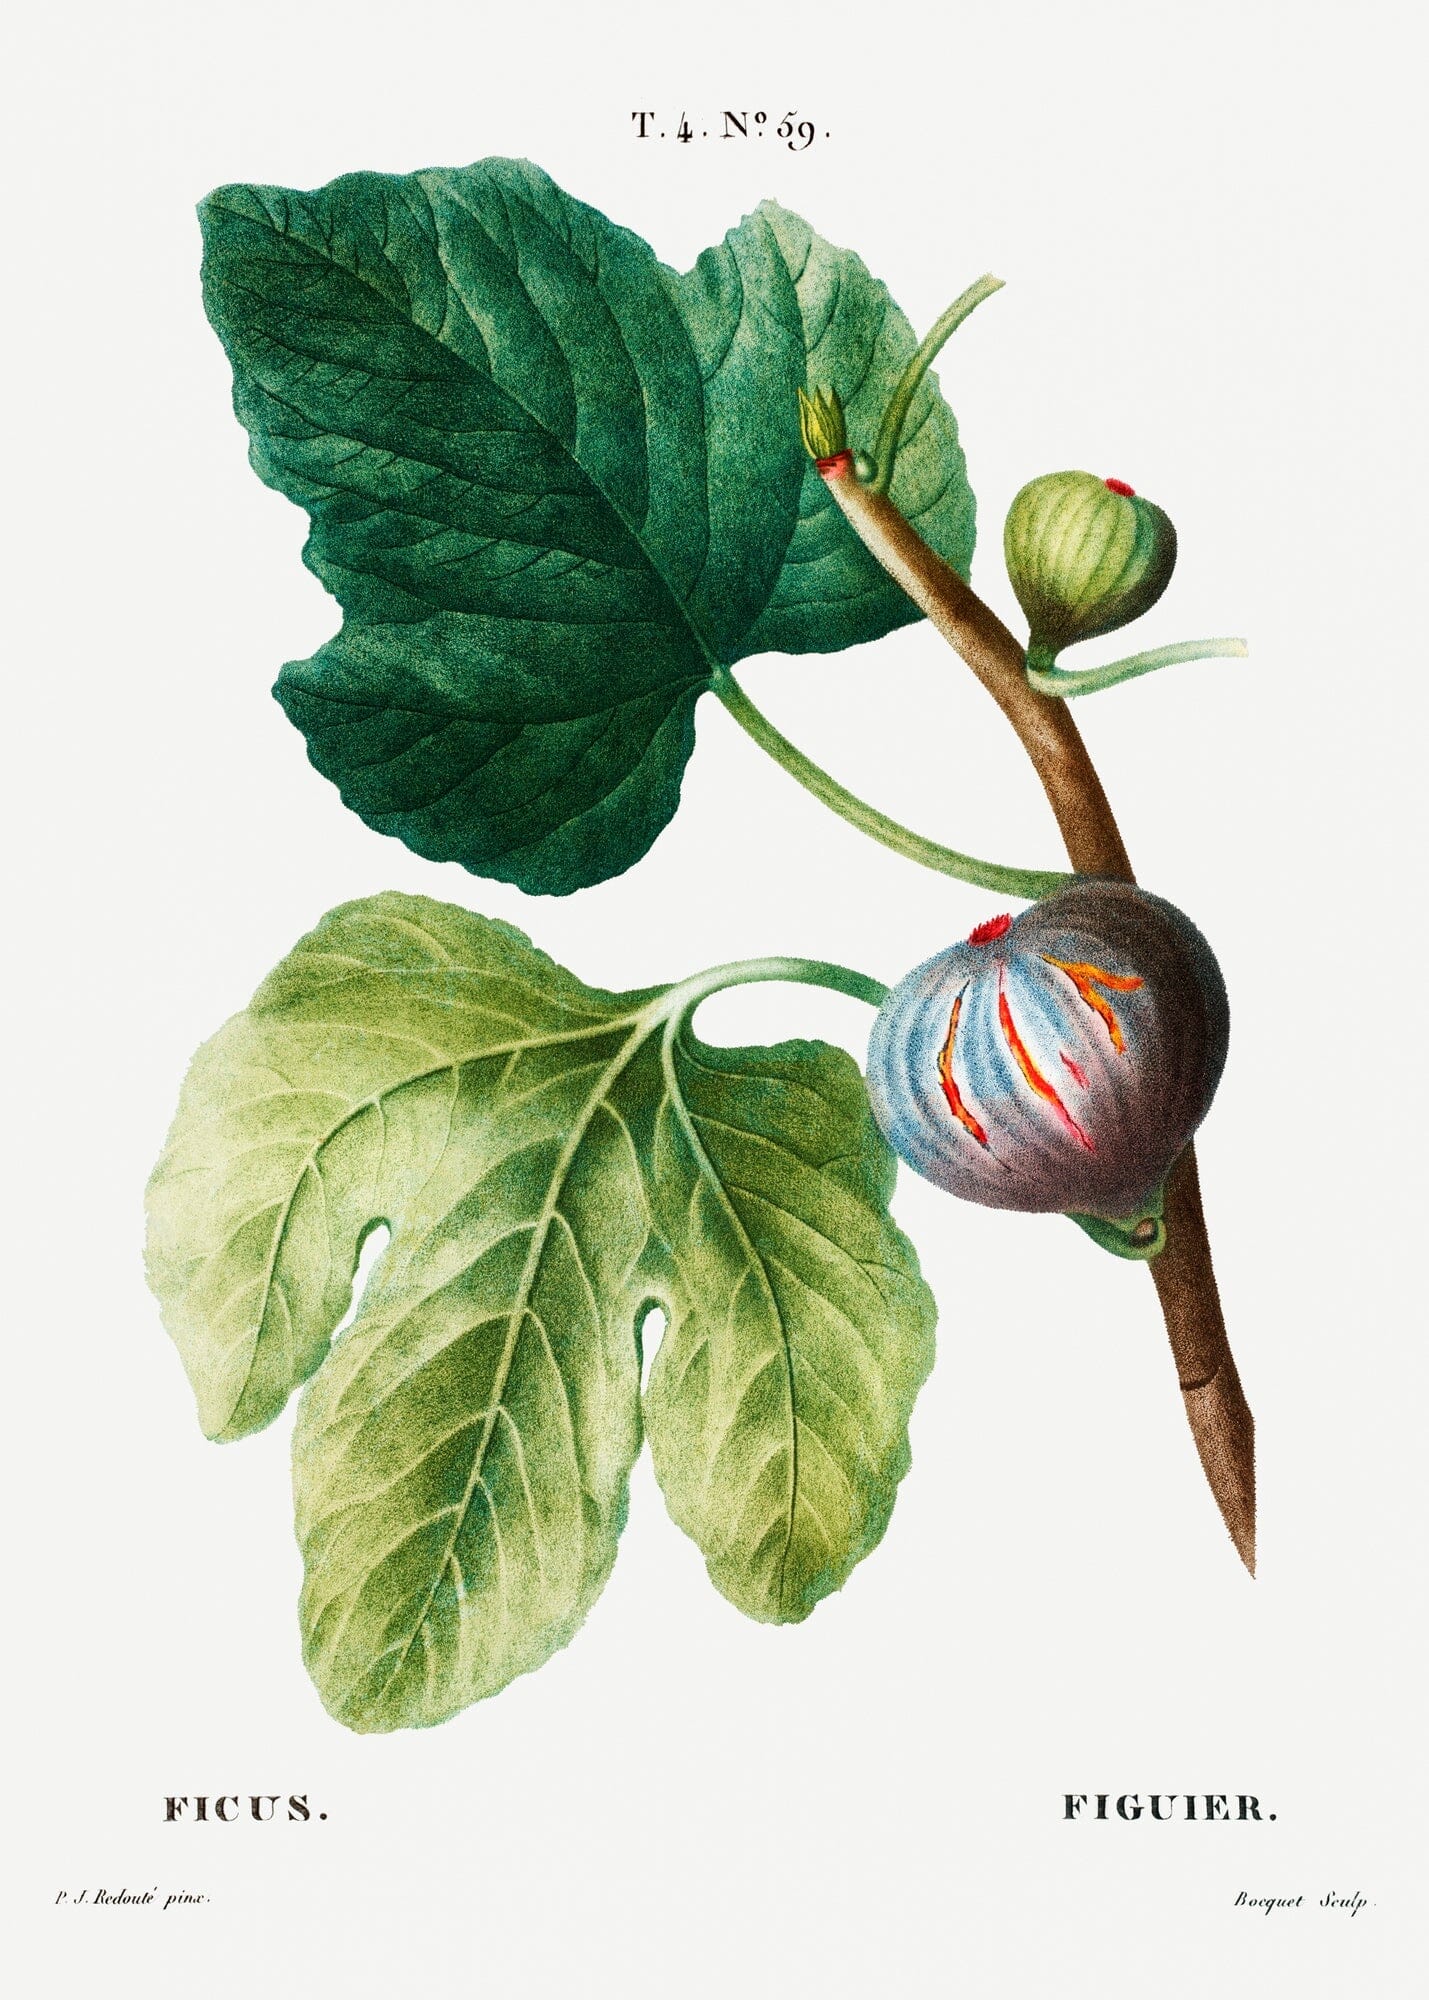 Fig tree (1800s) | Botanical prints | Pierre-Joseph Redouté Posters, Prints, & Visual Artwork The Trumpet Shop Vintage Prints   